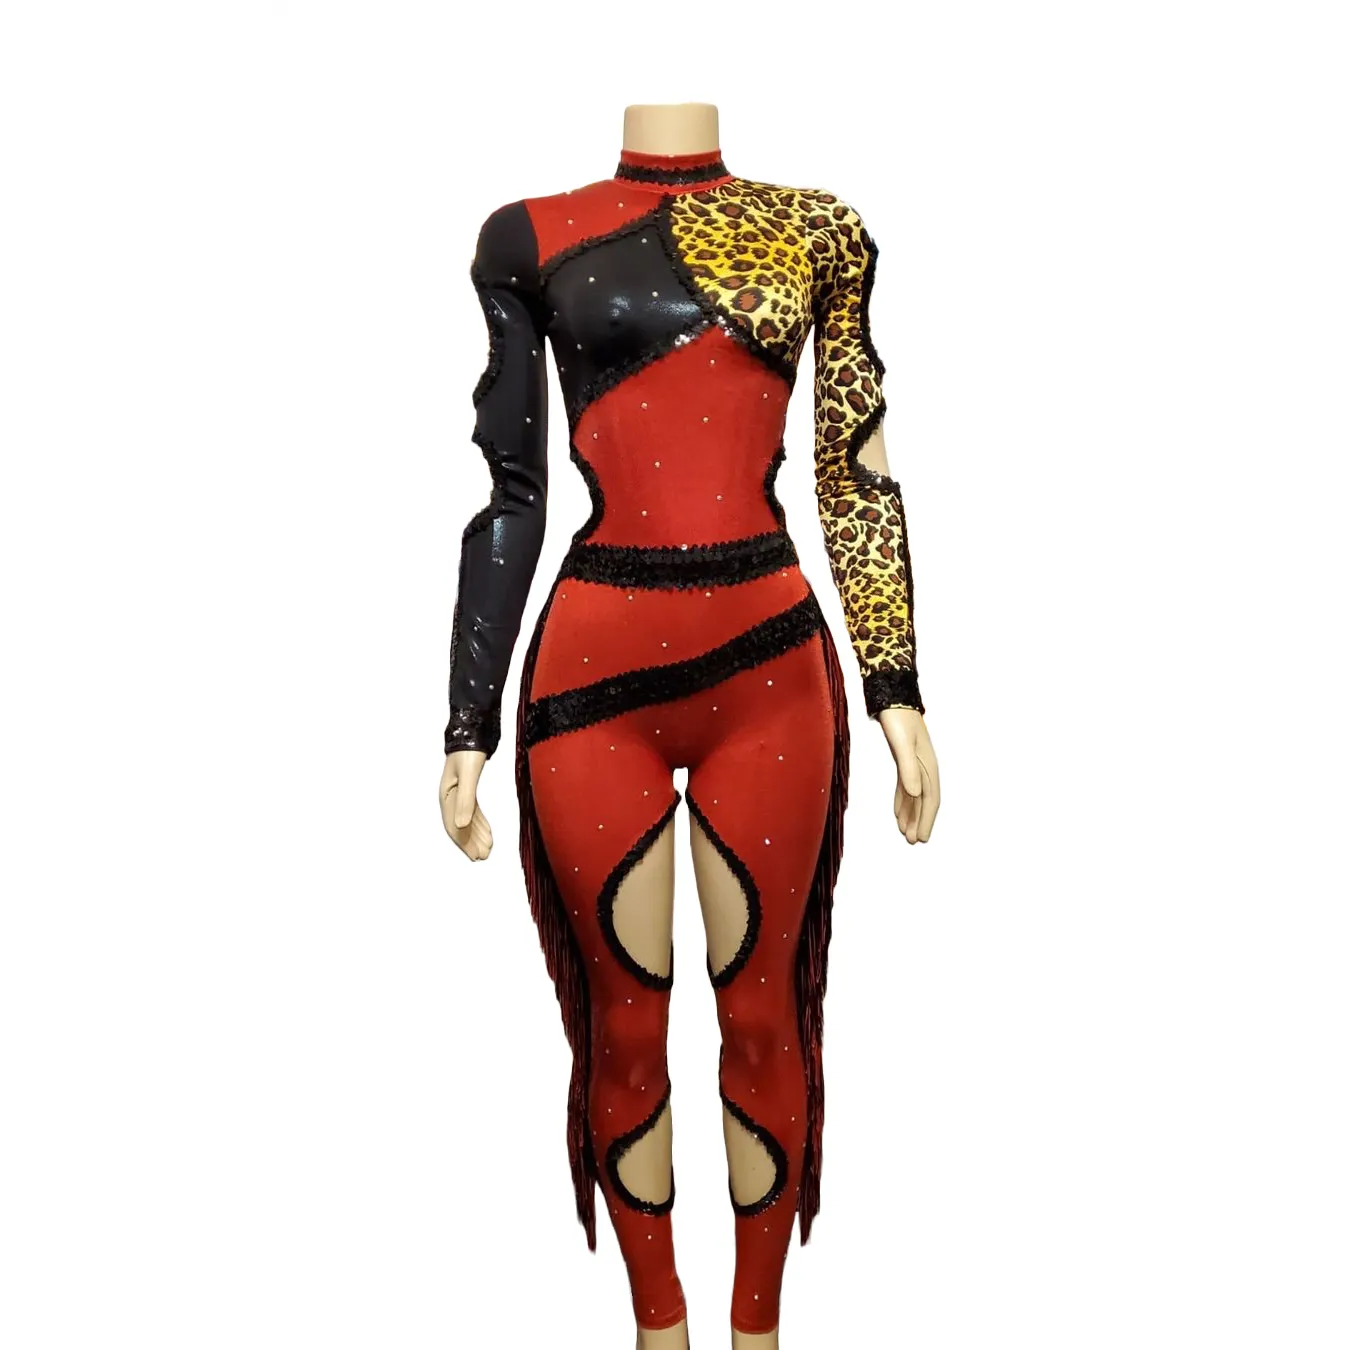 カスタム女性チーム衣装スタンドバトルガールズはスパンコールとフリンジマジョレットダンスユニフォームでコスチュームダンスウェアパフォーマンスを使用しました